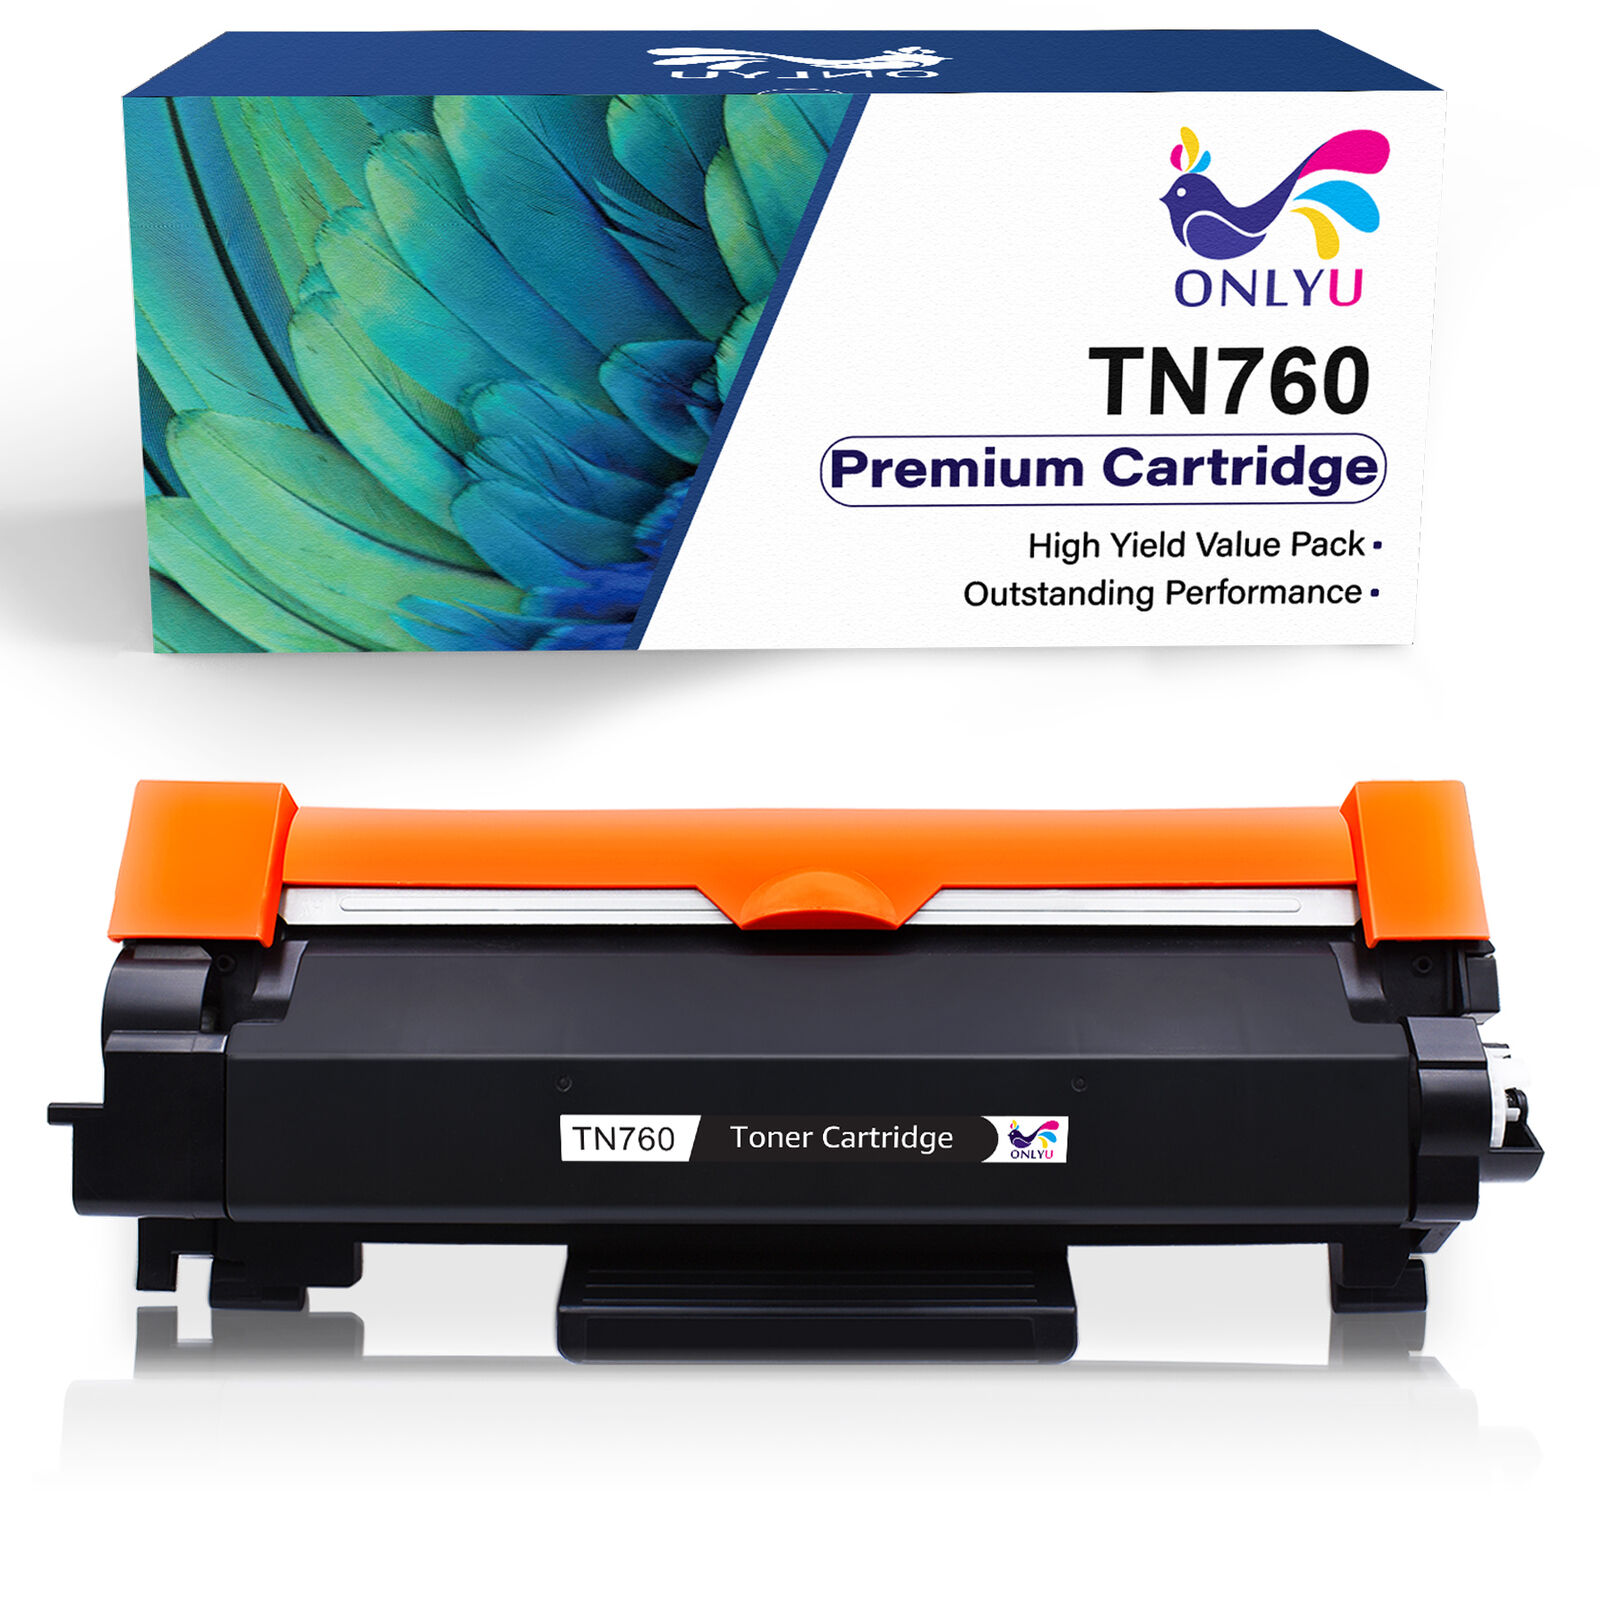 TN760 Toner Cartridges DR730 Drum for Brother DCP-L2550DW HL-L2395DW MFC-L2710DW